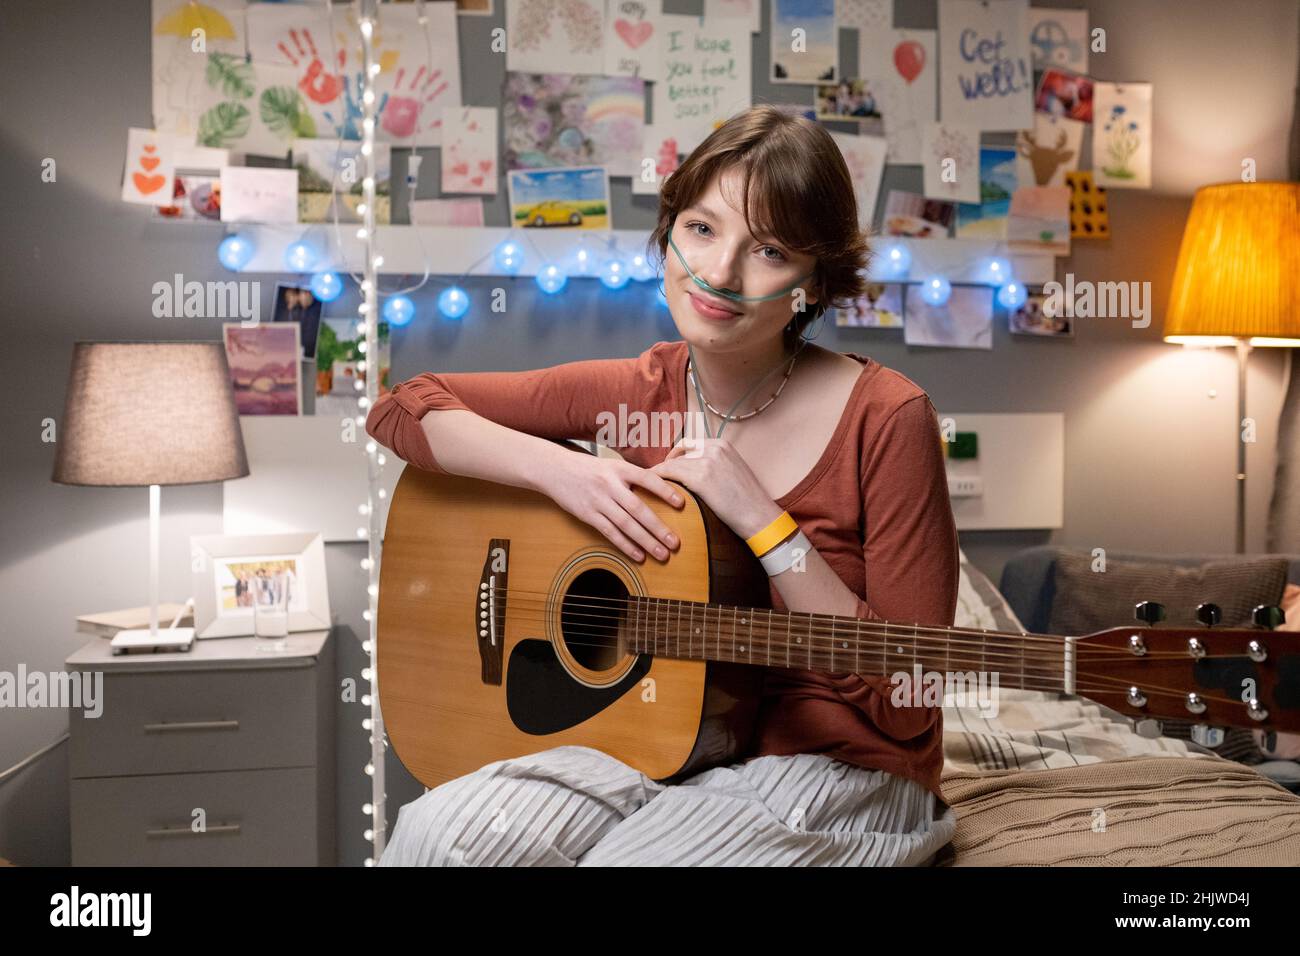 Porträt eines kranken Teenagers, das mit ihrer Gitarre auf dem Bett sitzt und die Kamera anschaut, die sie während ihrer Behandlung genießt, Musikinstrument zu spielen Stockfoto